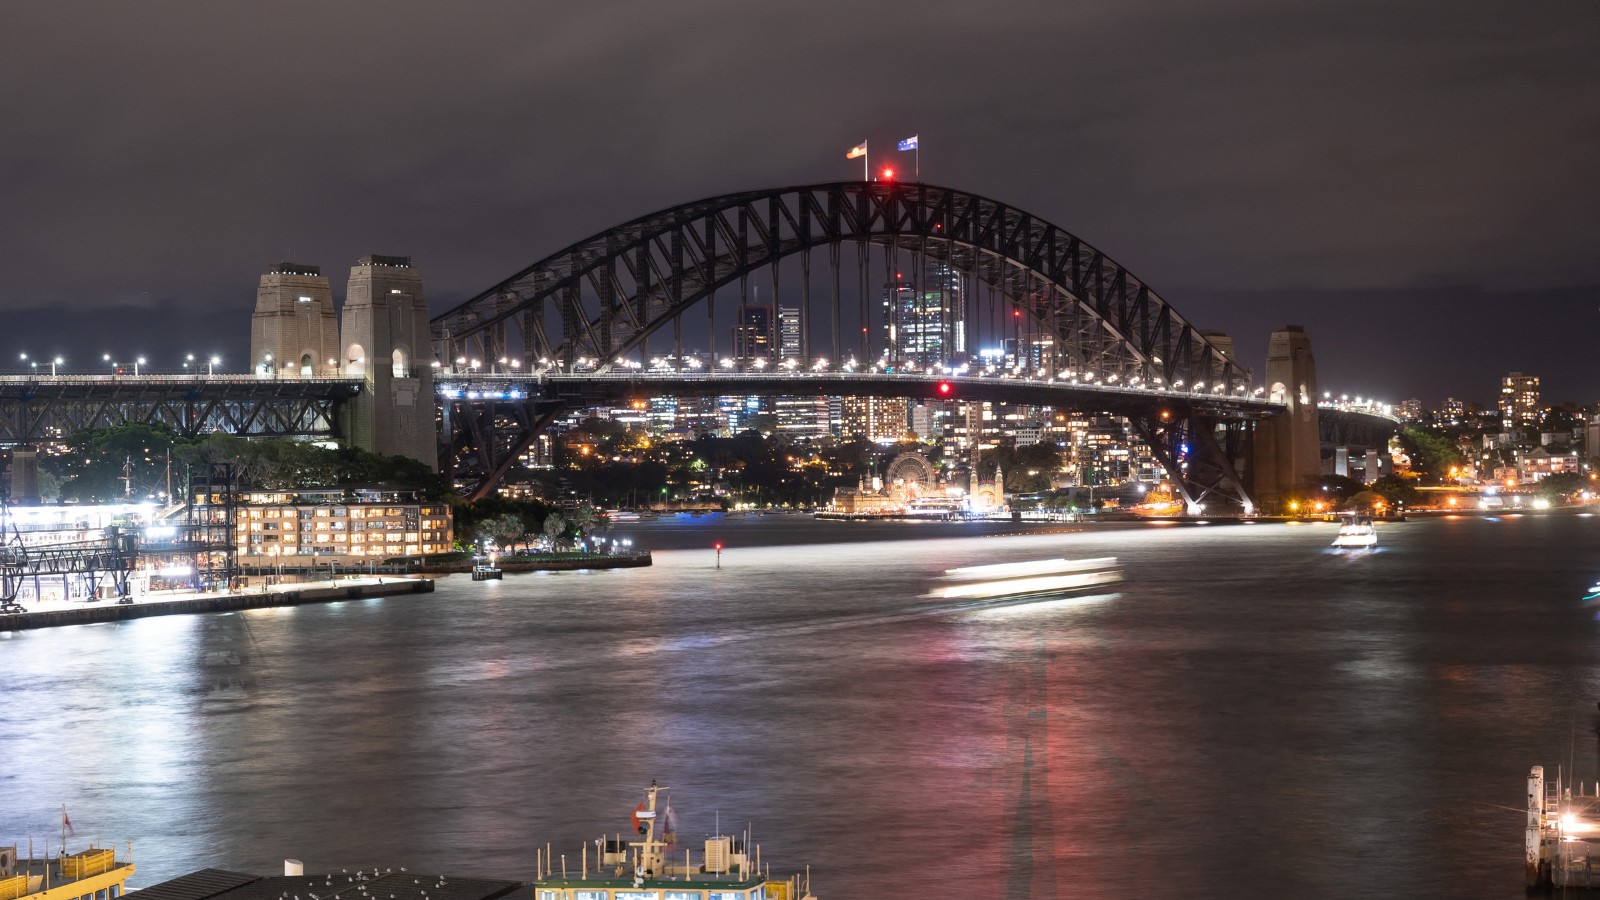 悉尼海港大桥在悉尼“地球一小时”环保活动期间熄灯。  /法新社/温德尔特奥多罗。